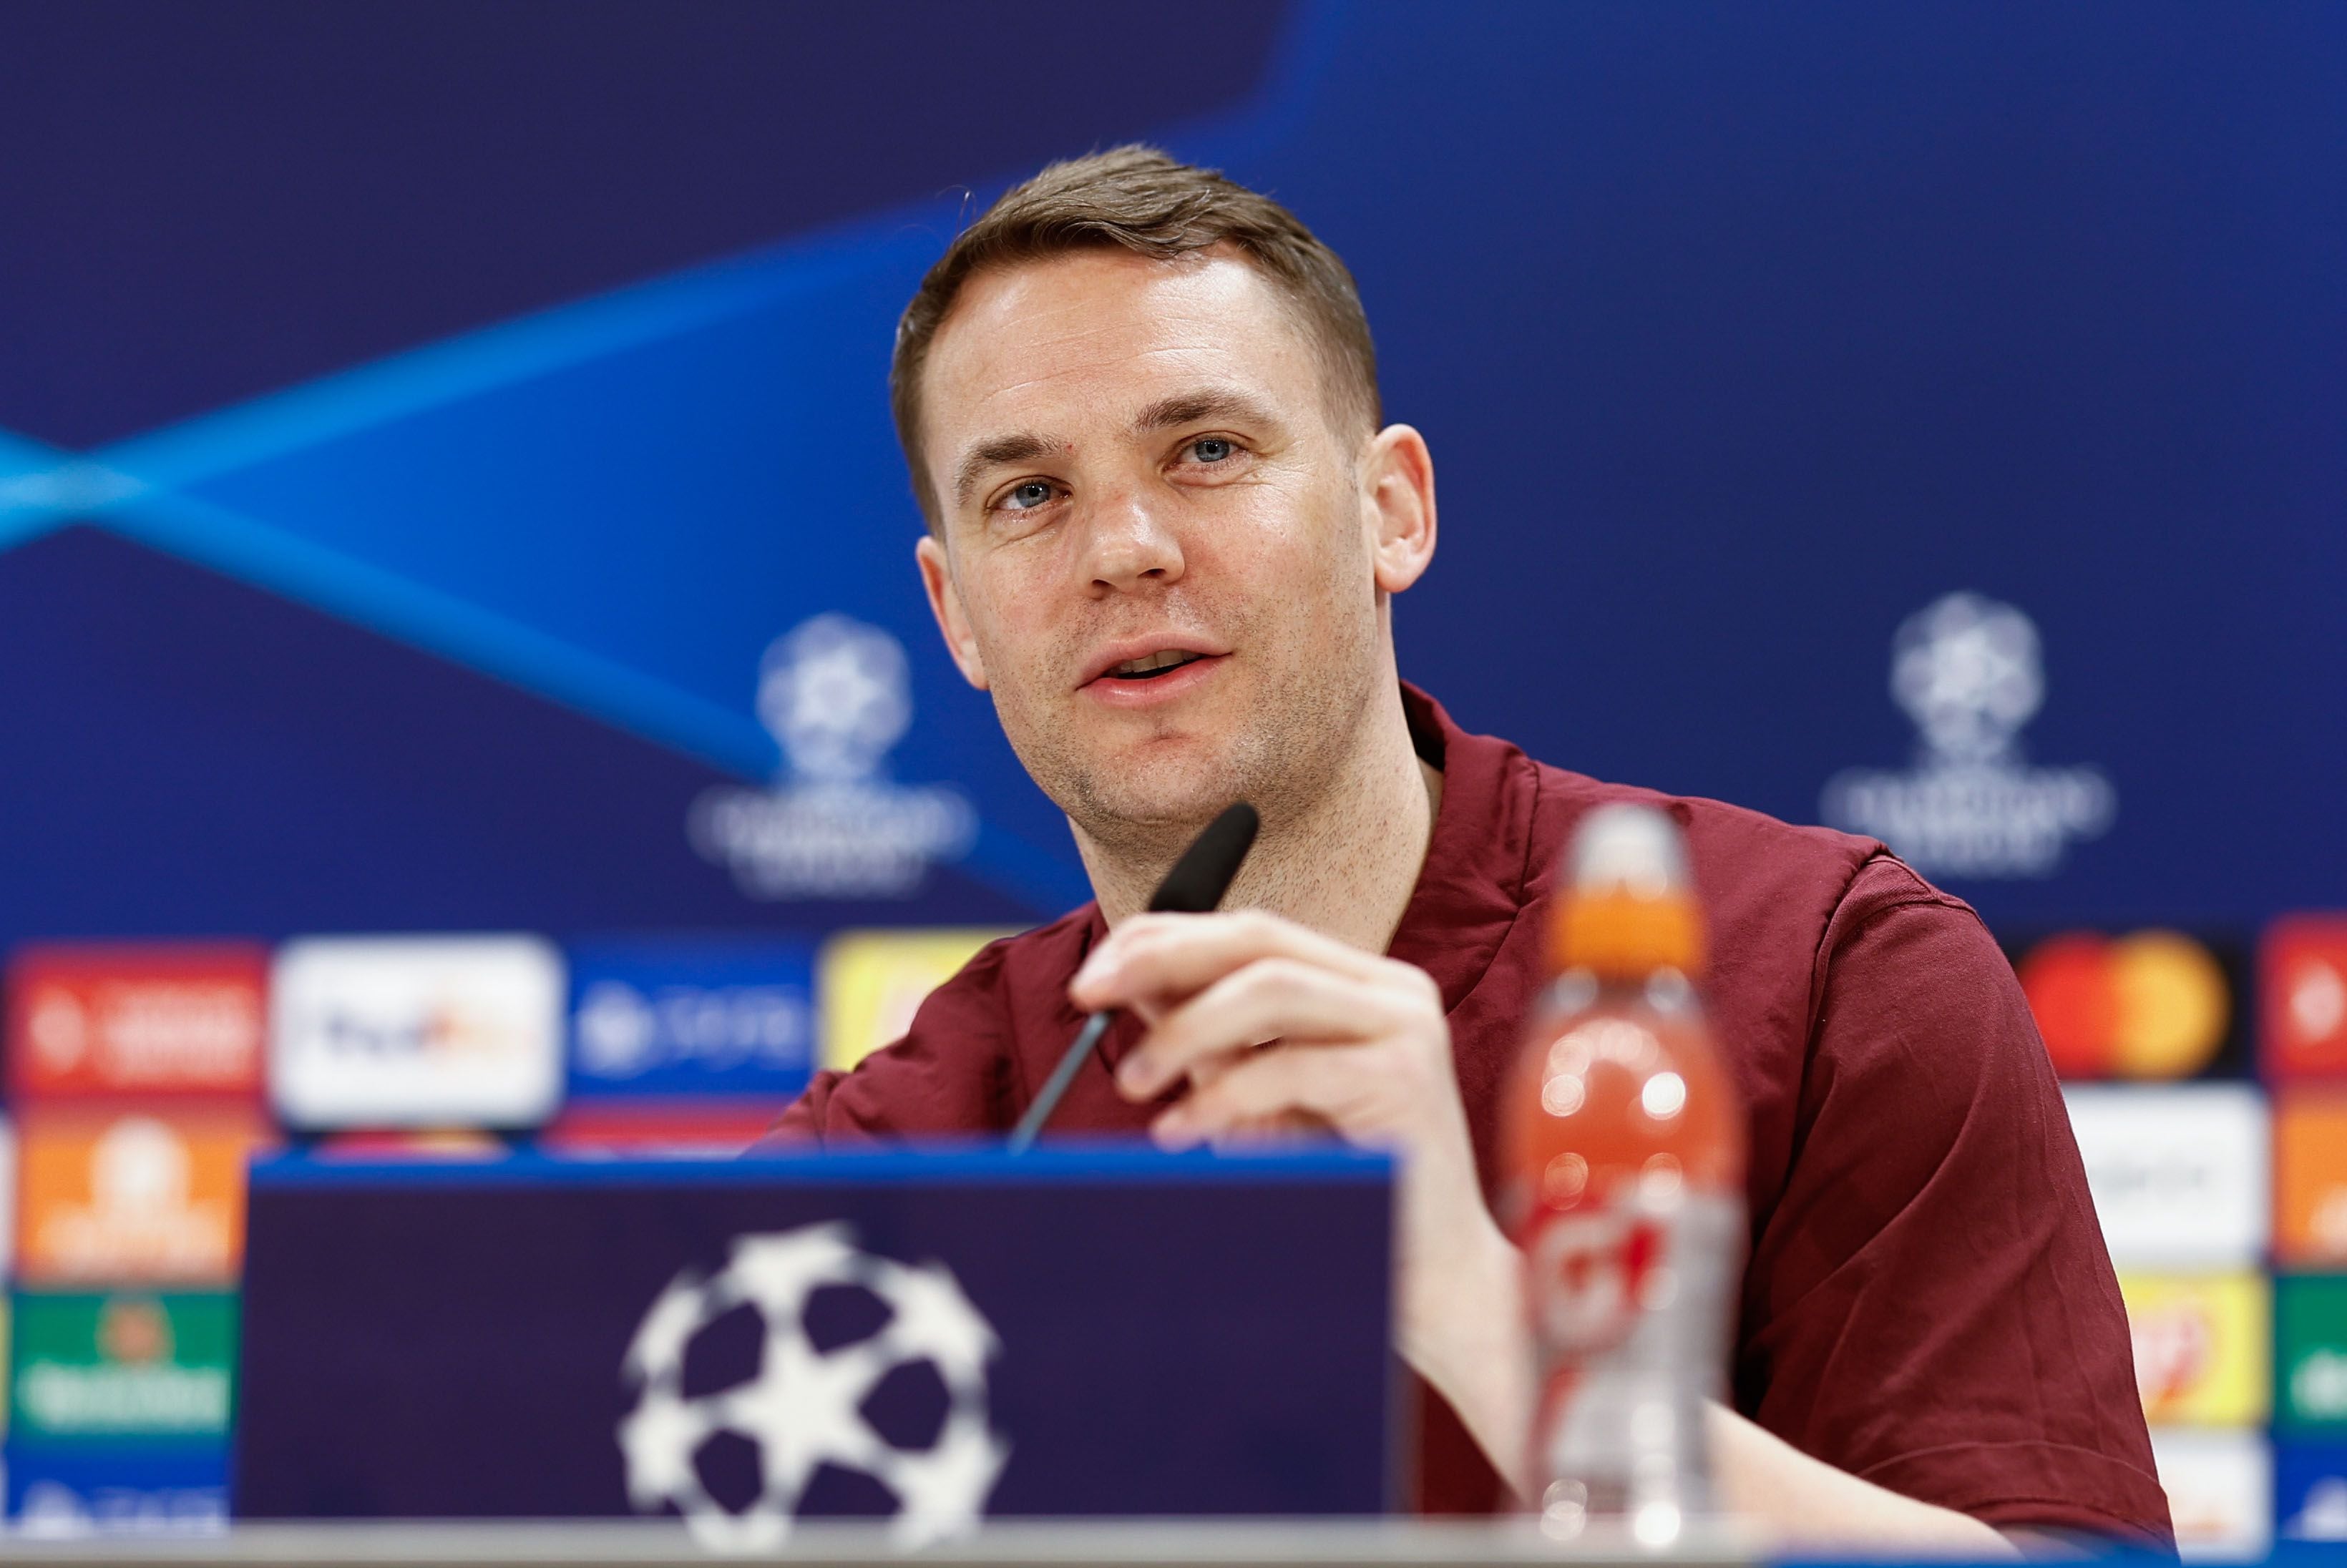 Neuer habló en la conferencia de prensa previa al duelo (Efe)